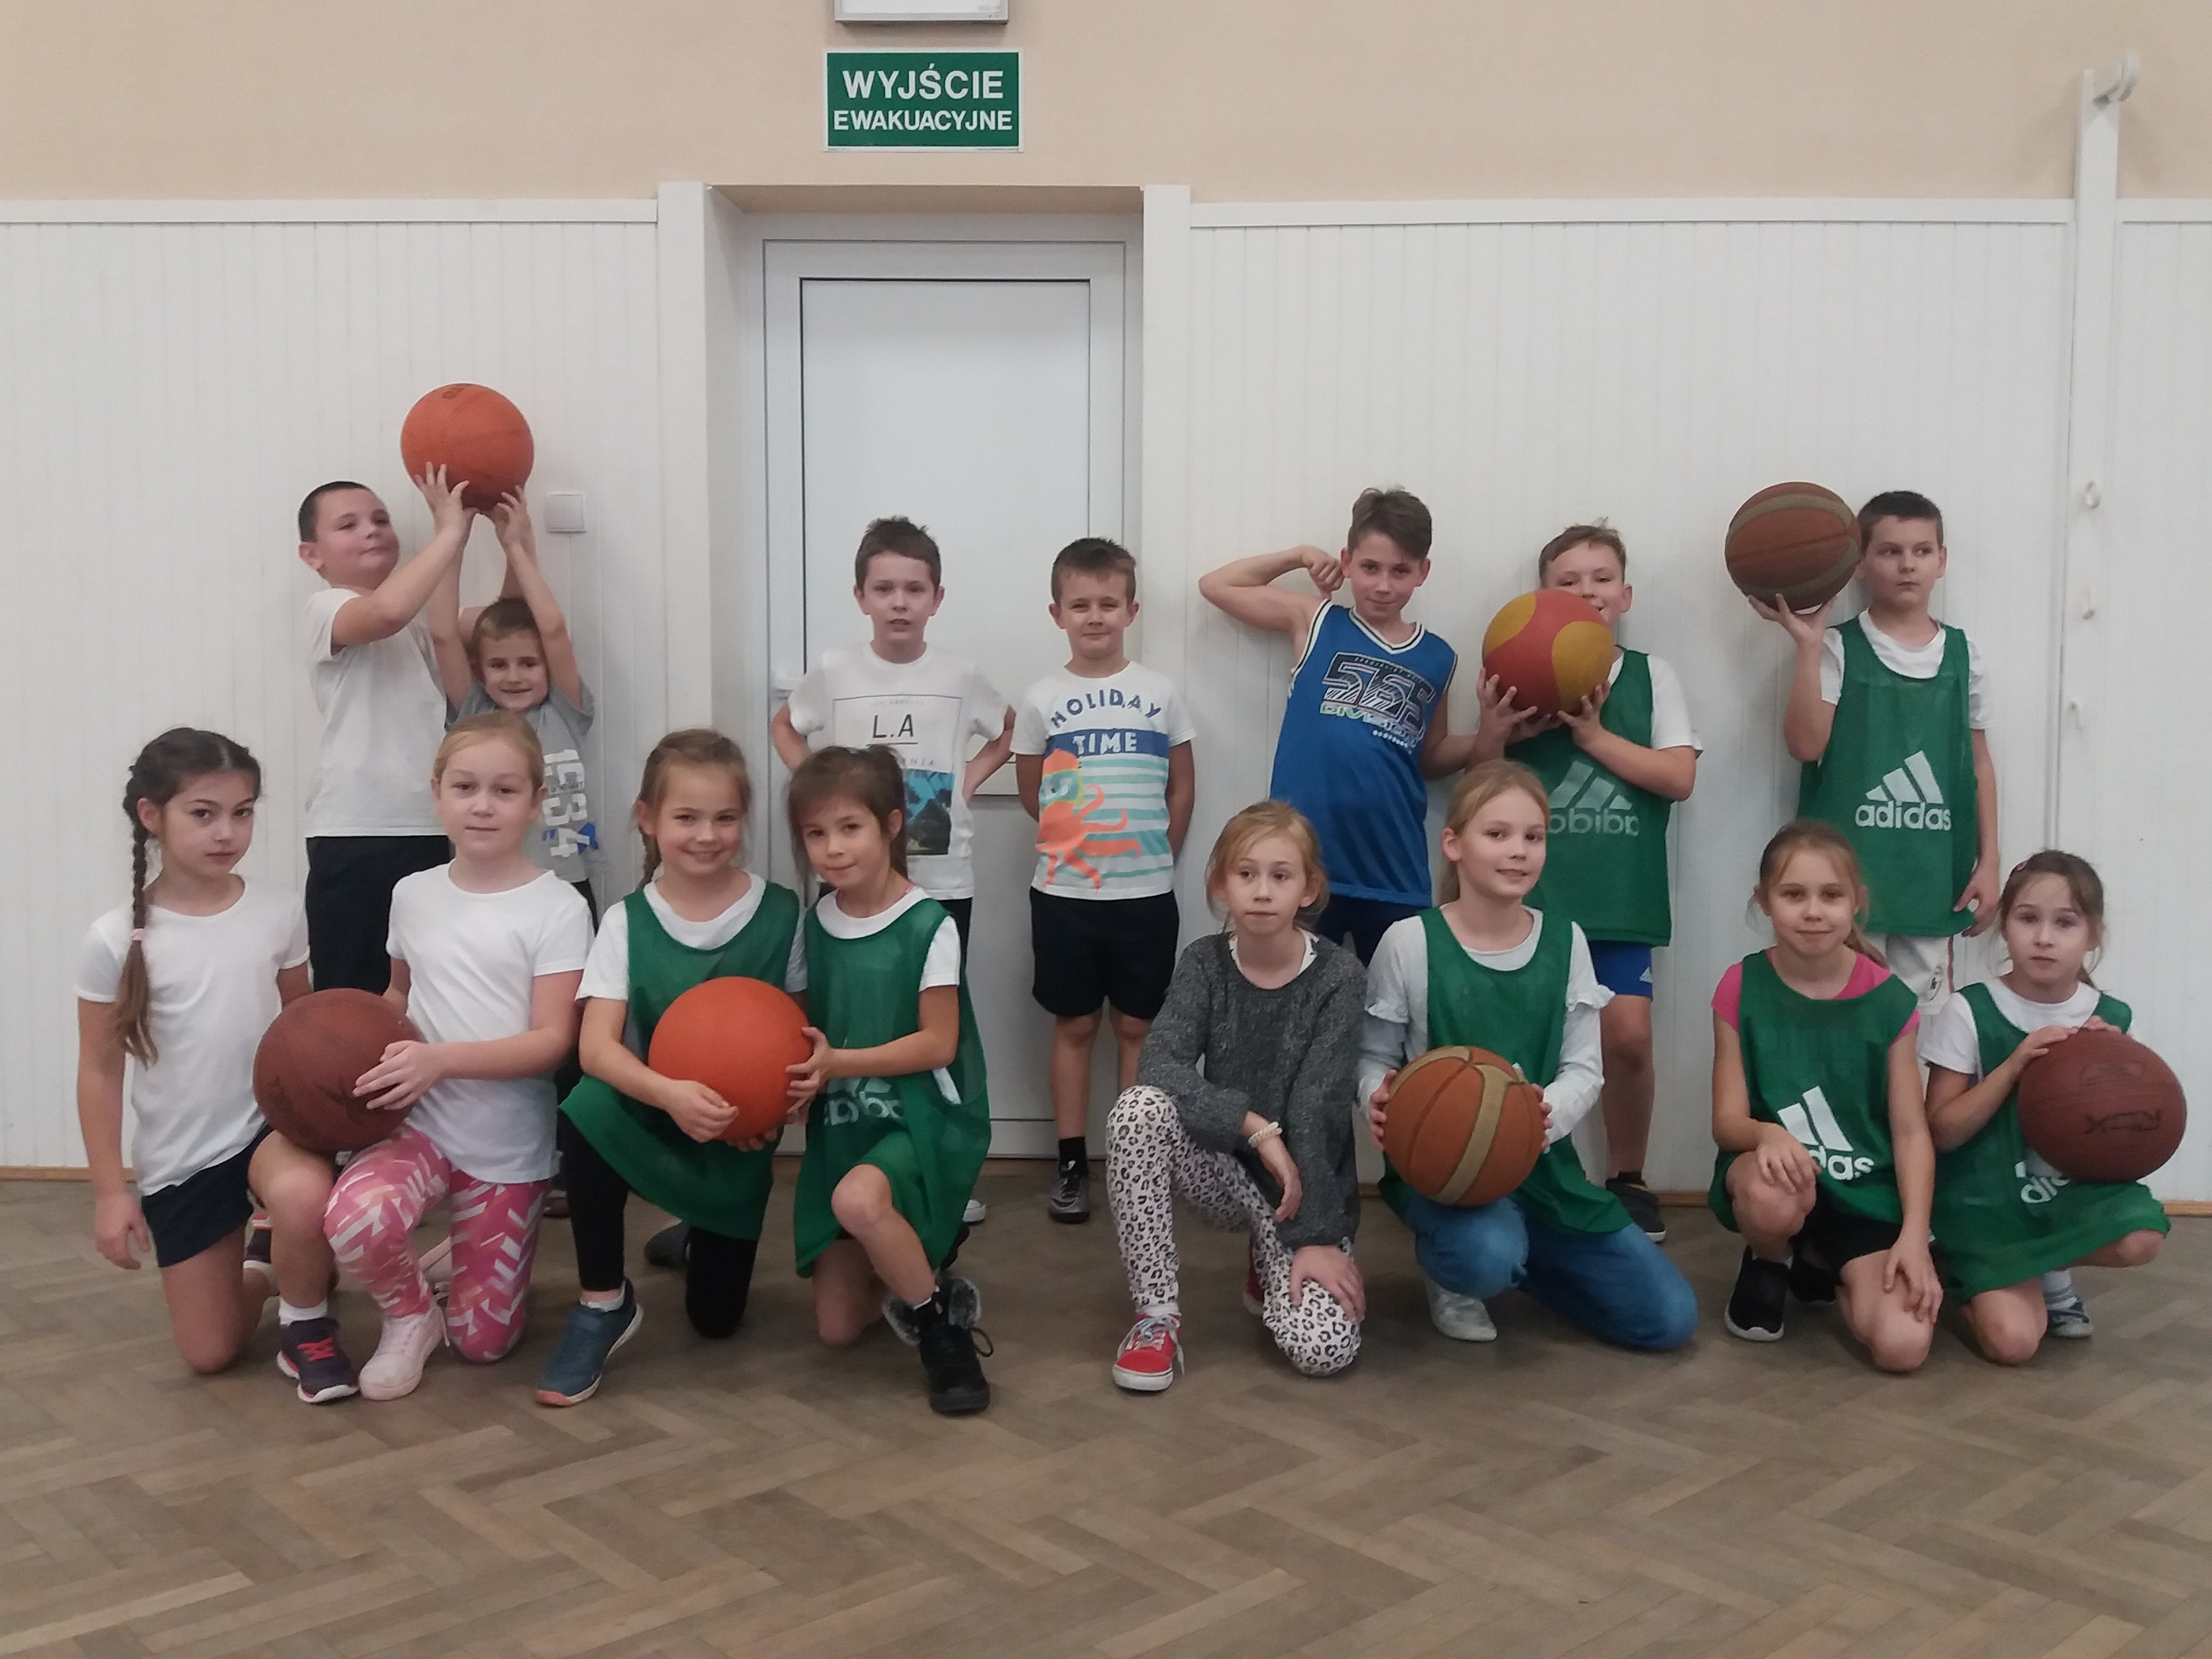 Akademia Can-Pack Okocimski Brzesko wspiera koszykówkę